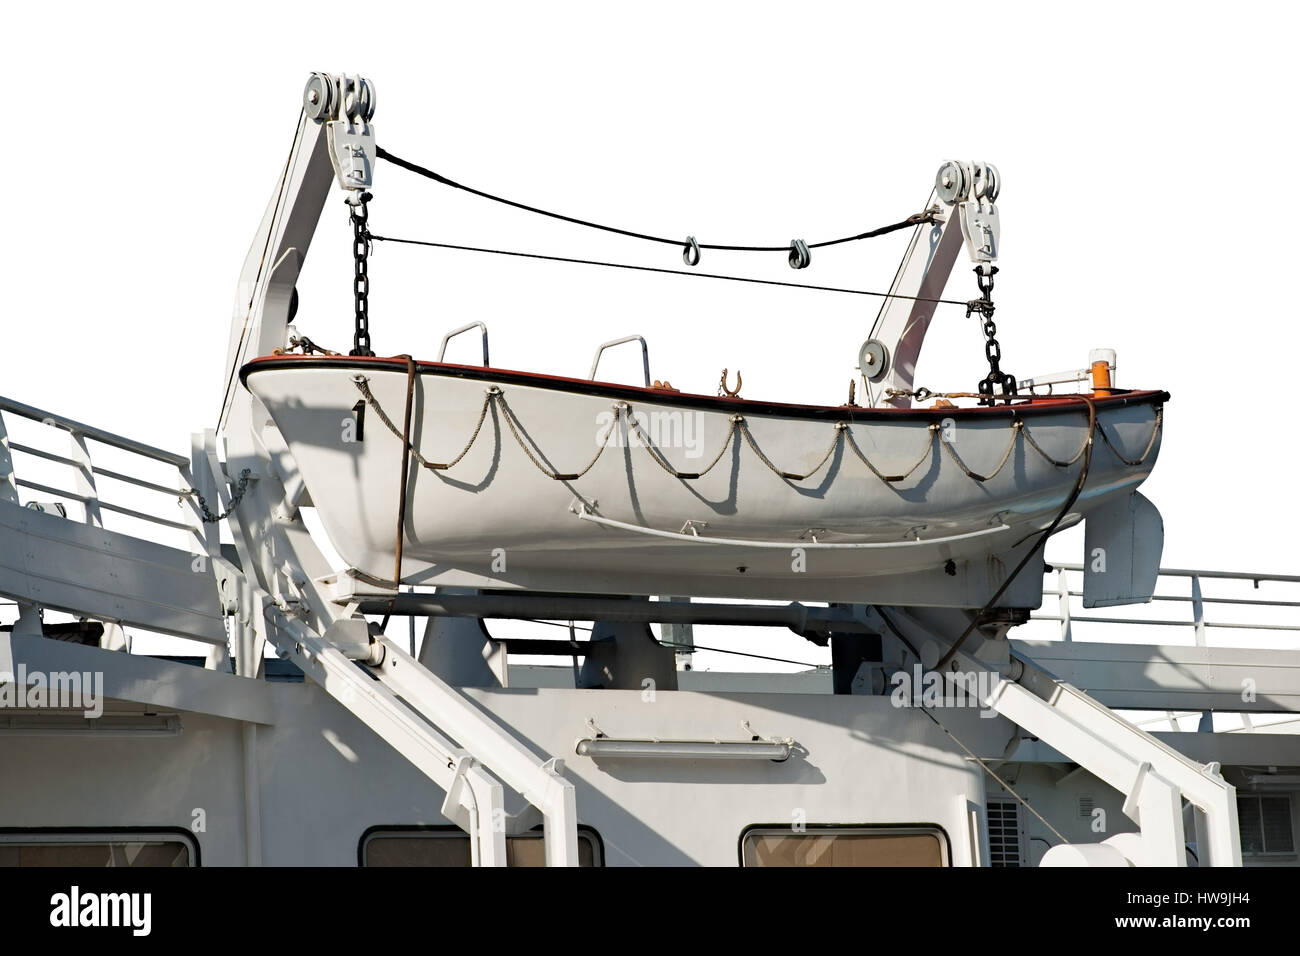 Weiße Rettungsboot auf einer Winde oder hochziehen Engine eines Schiffes. Auf weißen Hintergrund isoliert. Stockfoto